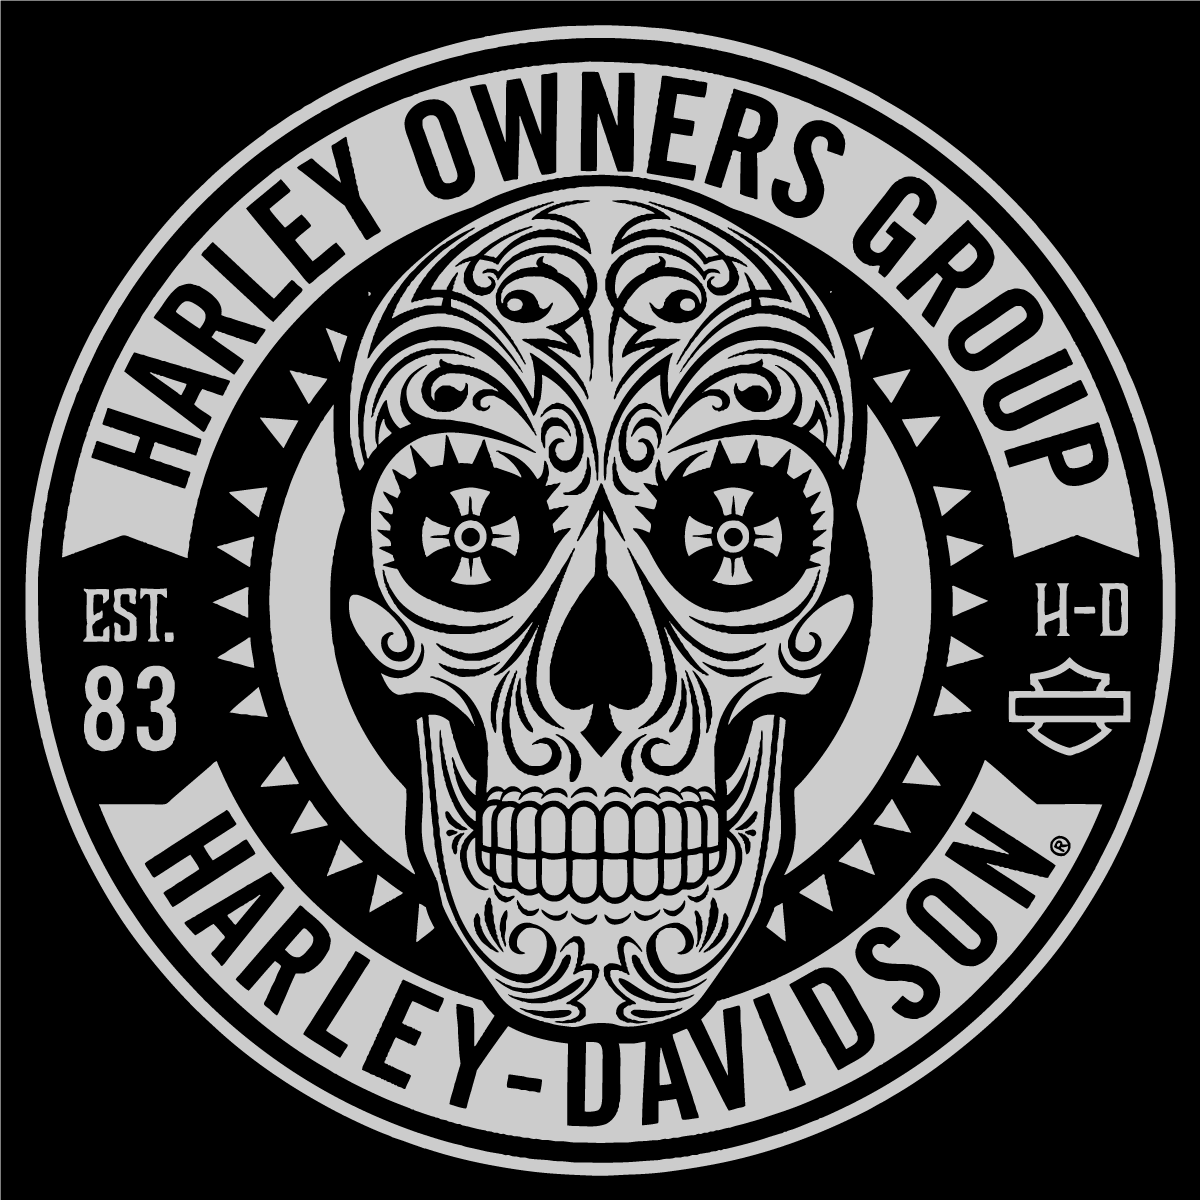 Download Harley Davidson Skull Logo Vector at Vectorified.com ...